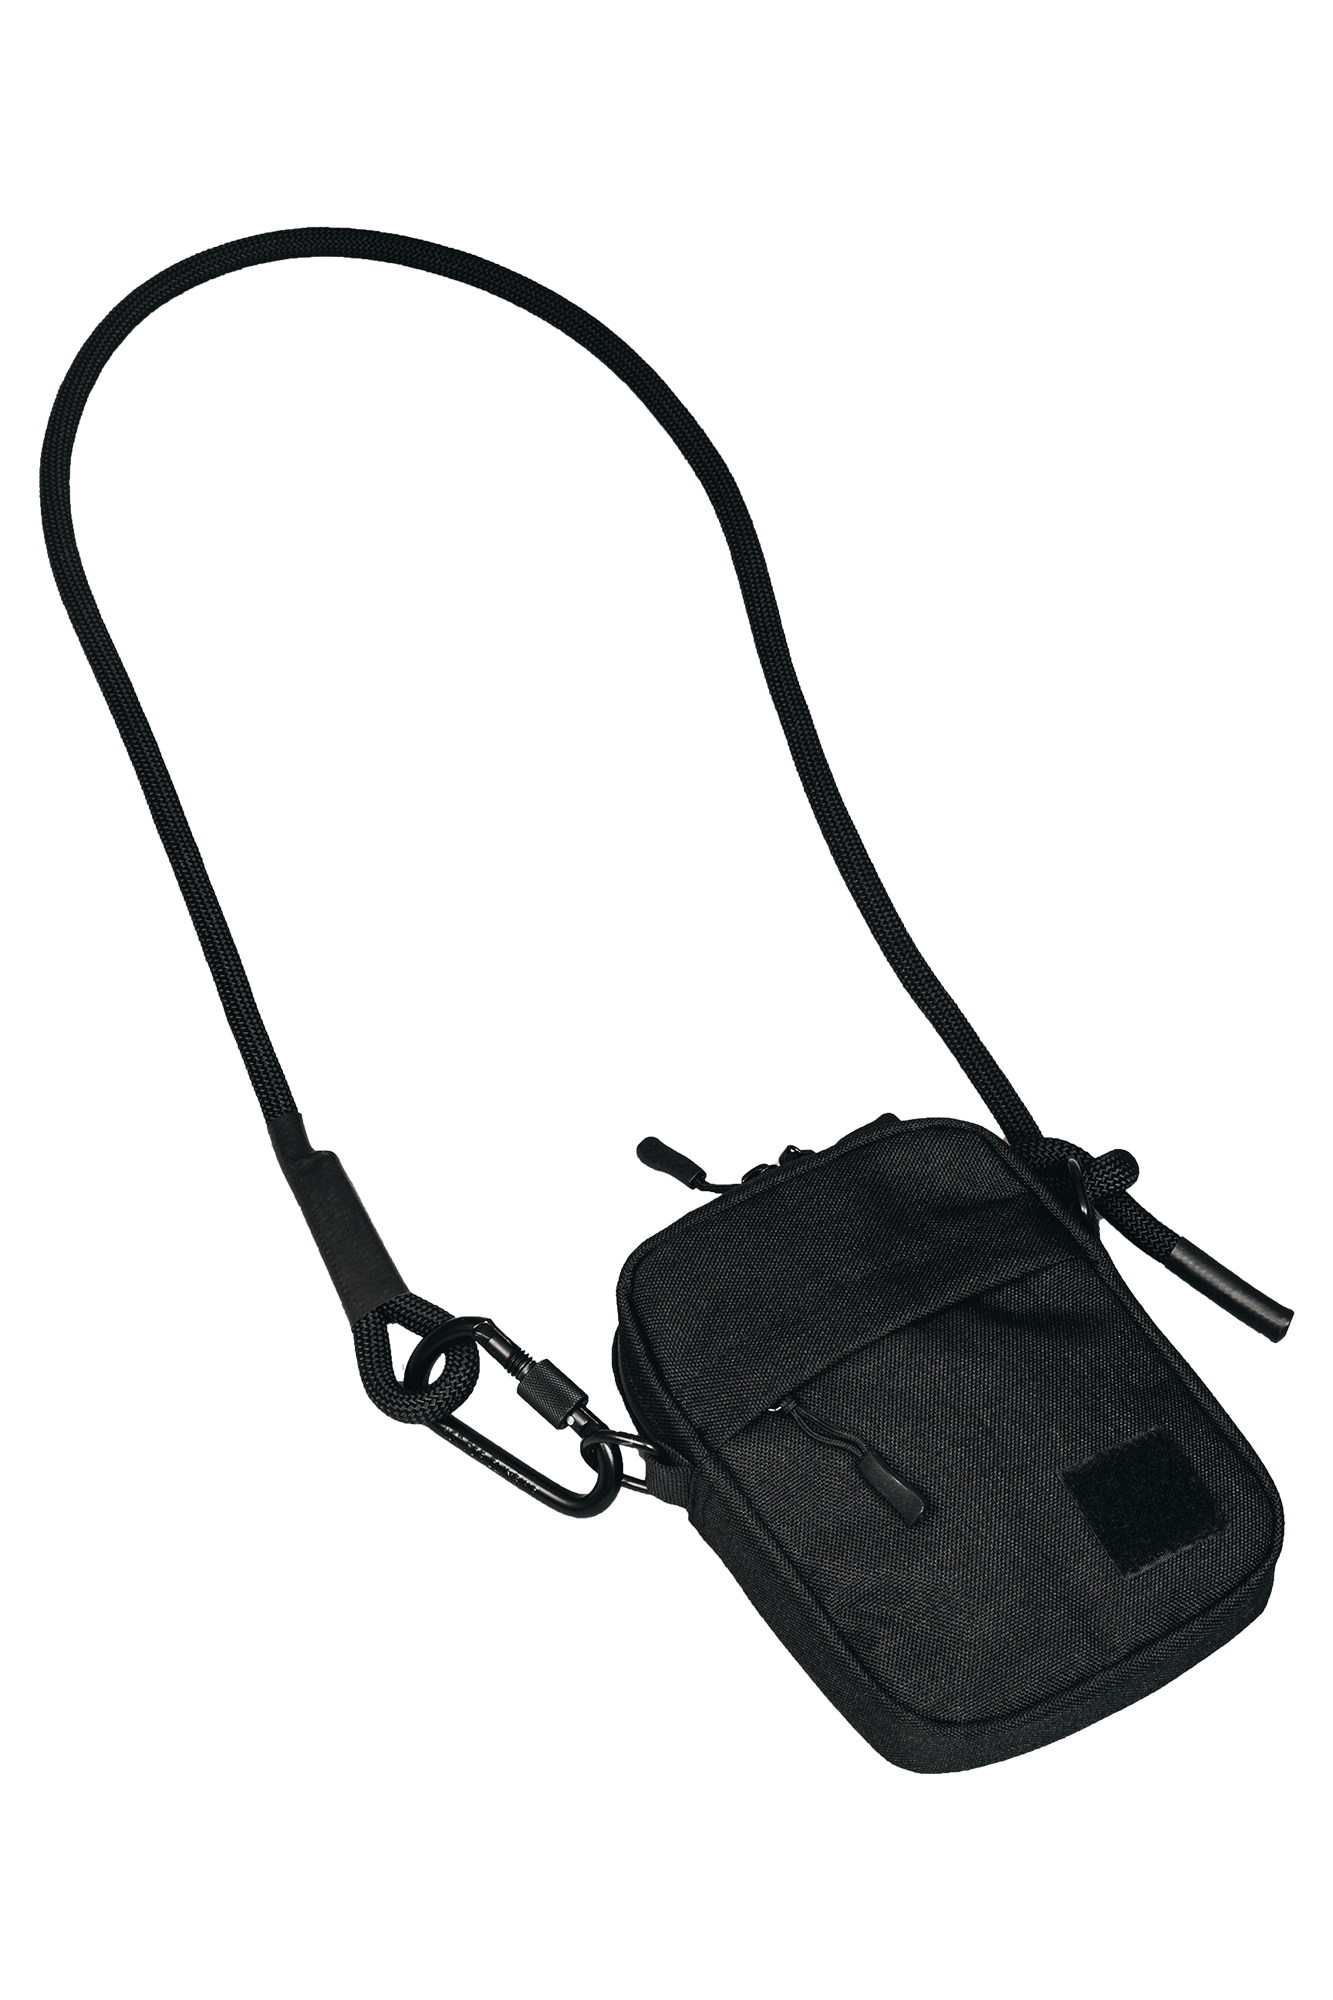 LV White Hand-held Bag Stylish Sling bag handbag for womens/Girls  Waterproof Sling Bag White - Price in India